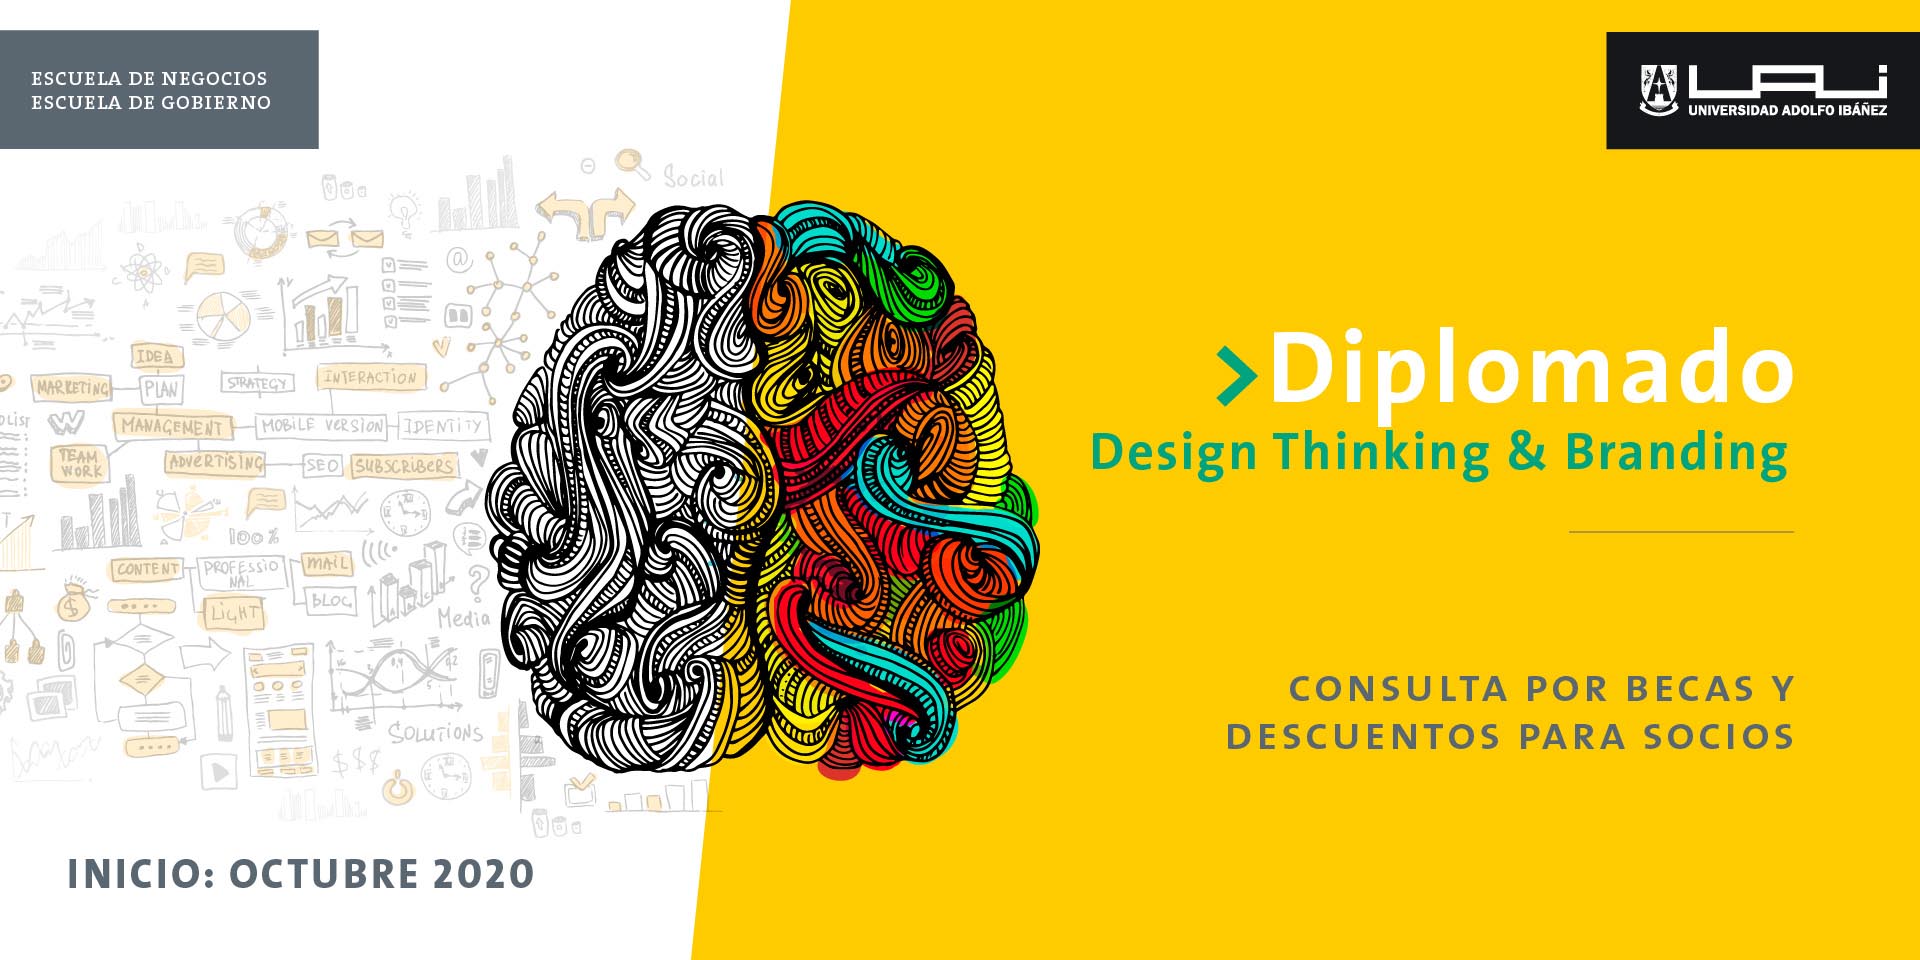 Diplomado design thinking & branding_UAI